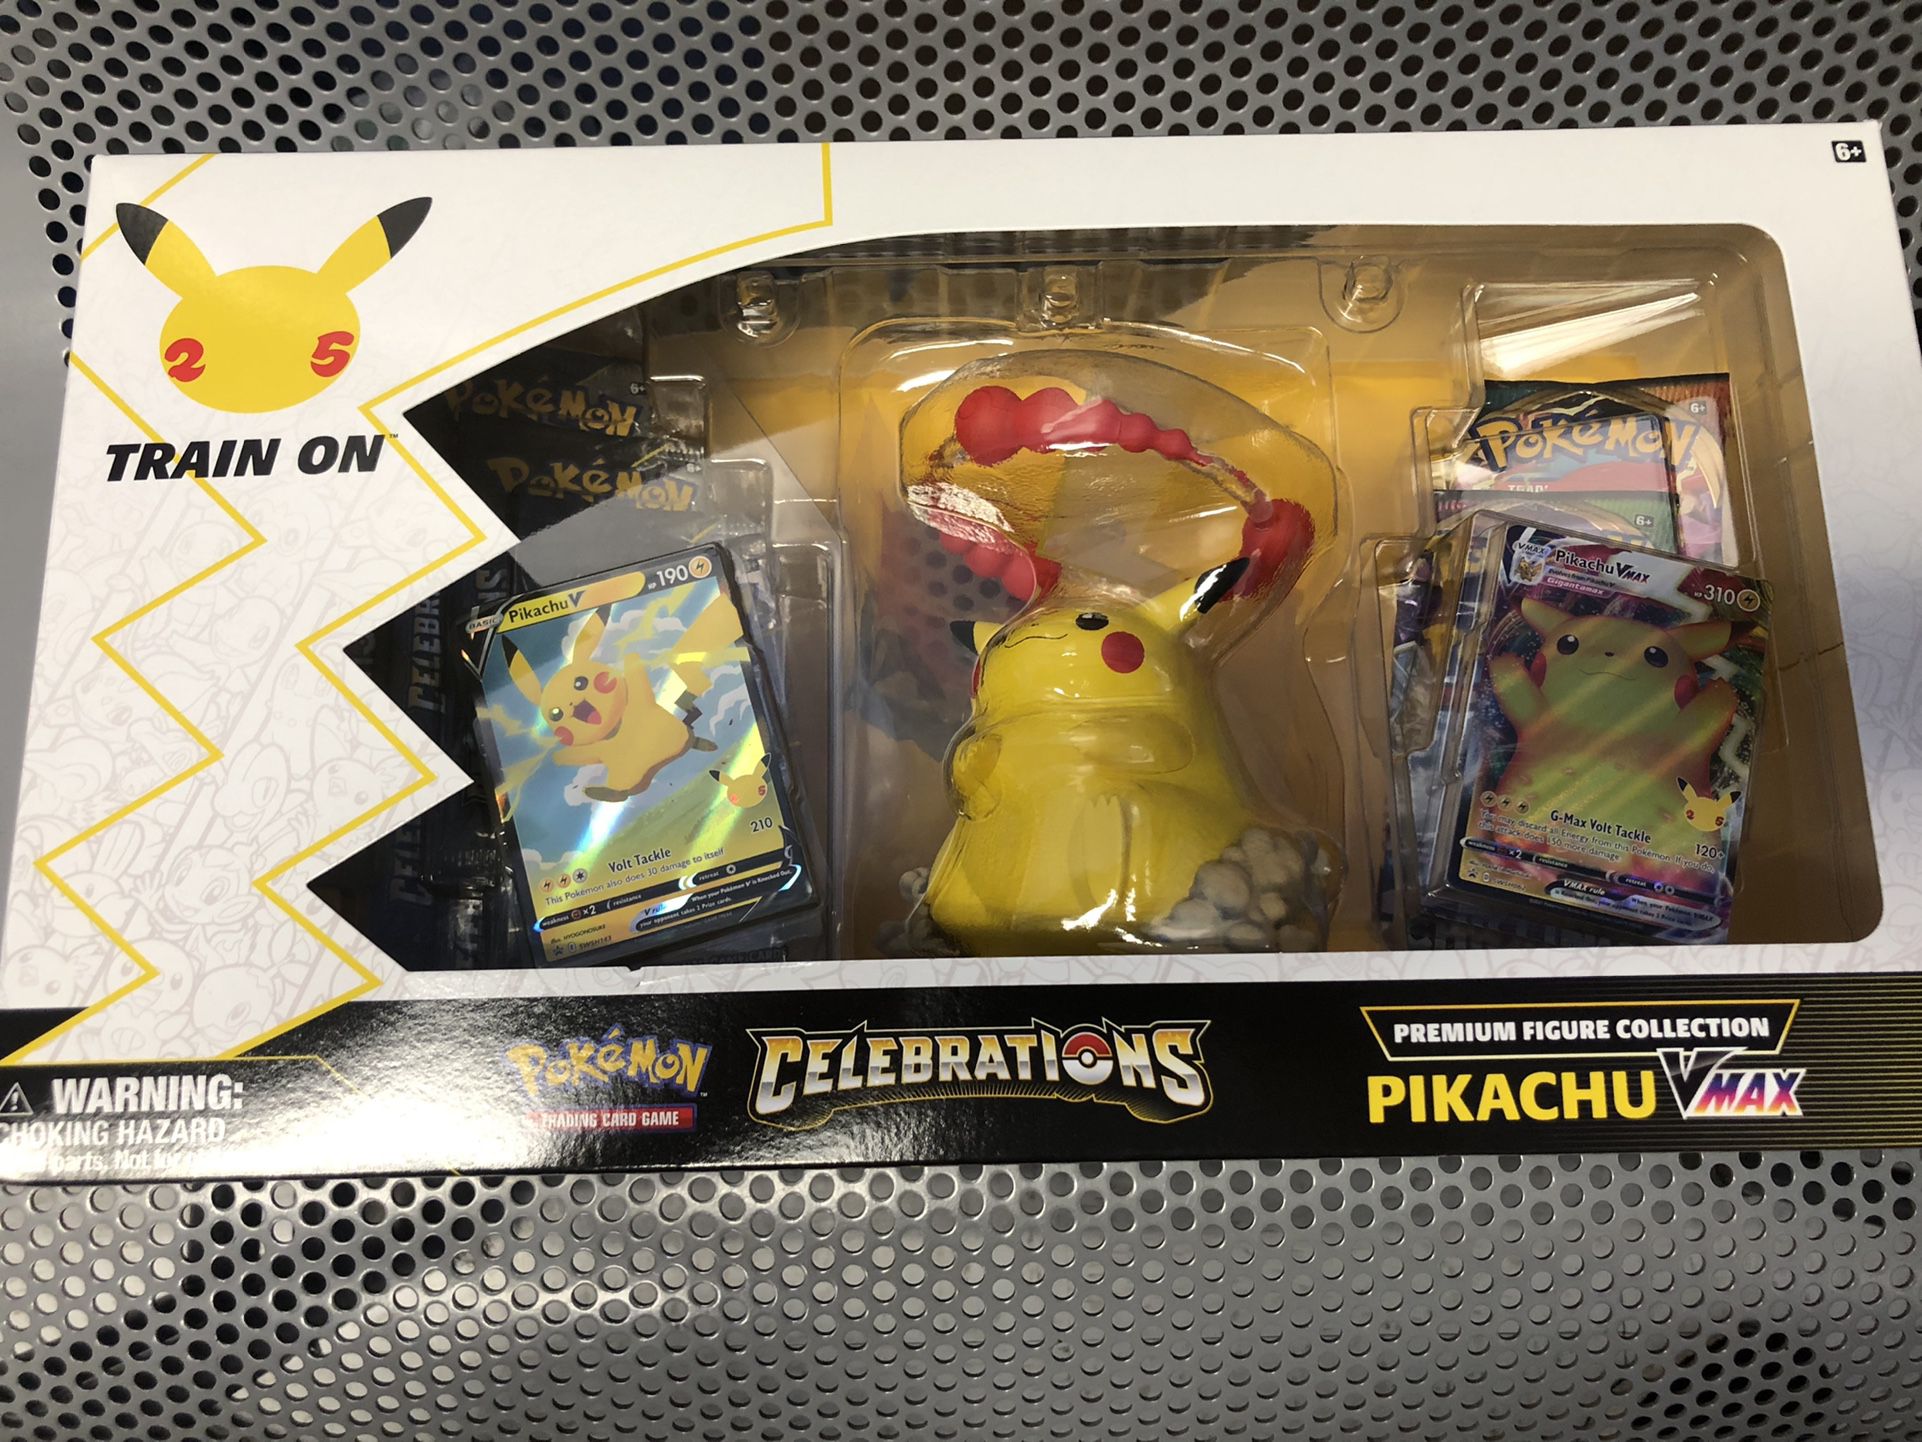  Pokémon Celebrations Premium Figure Collection 